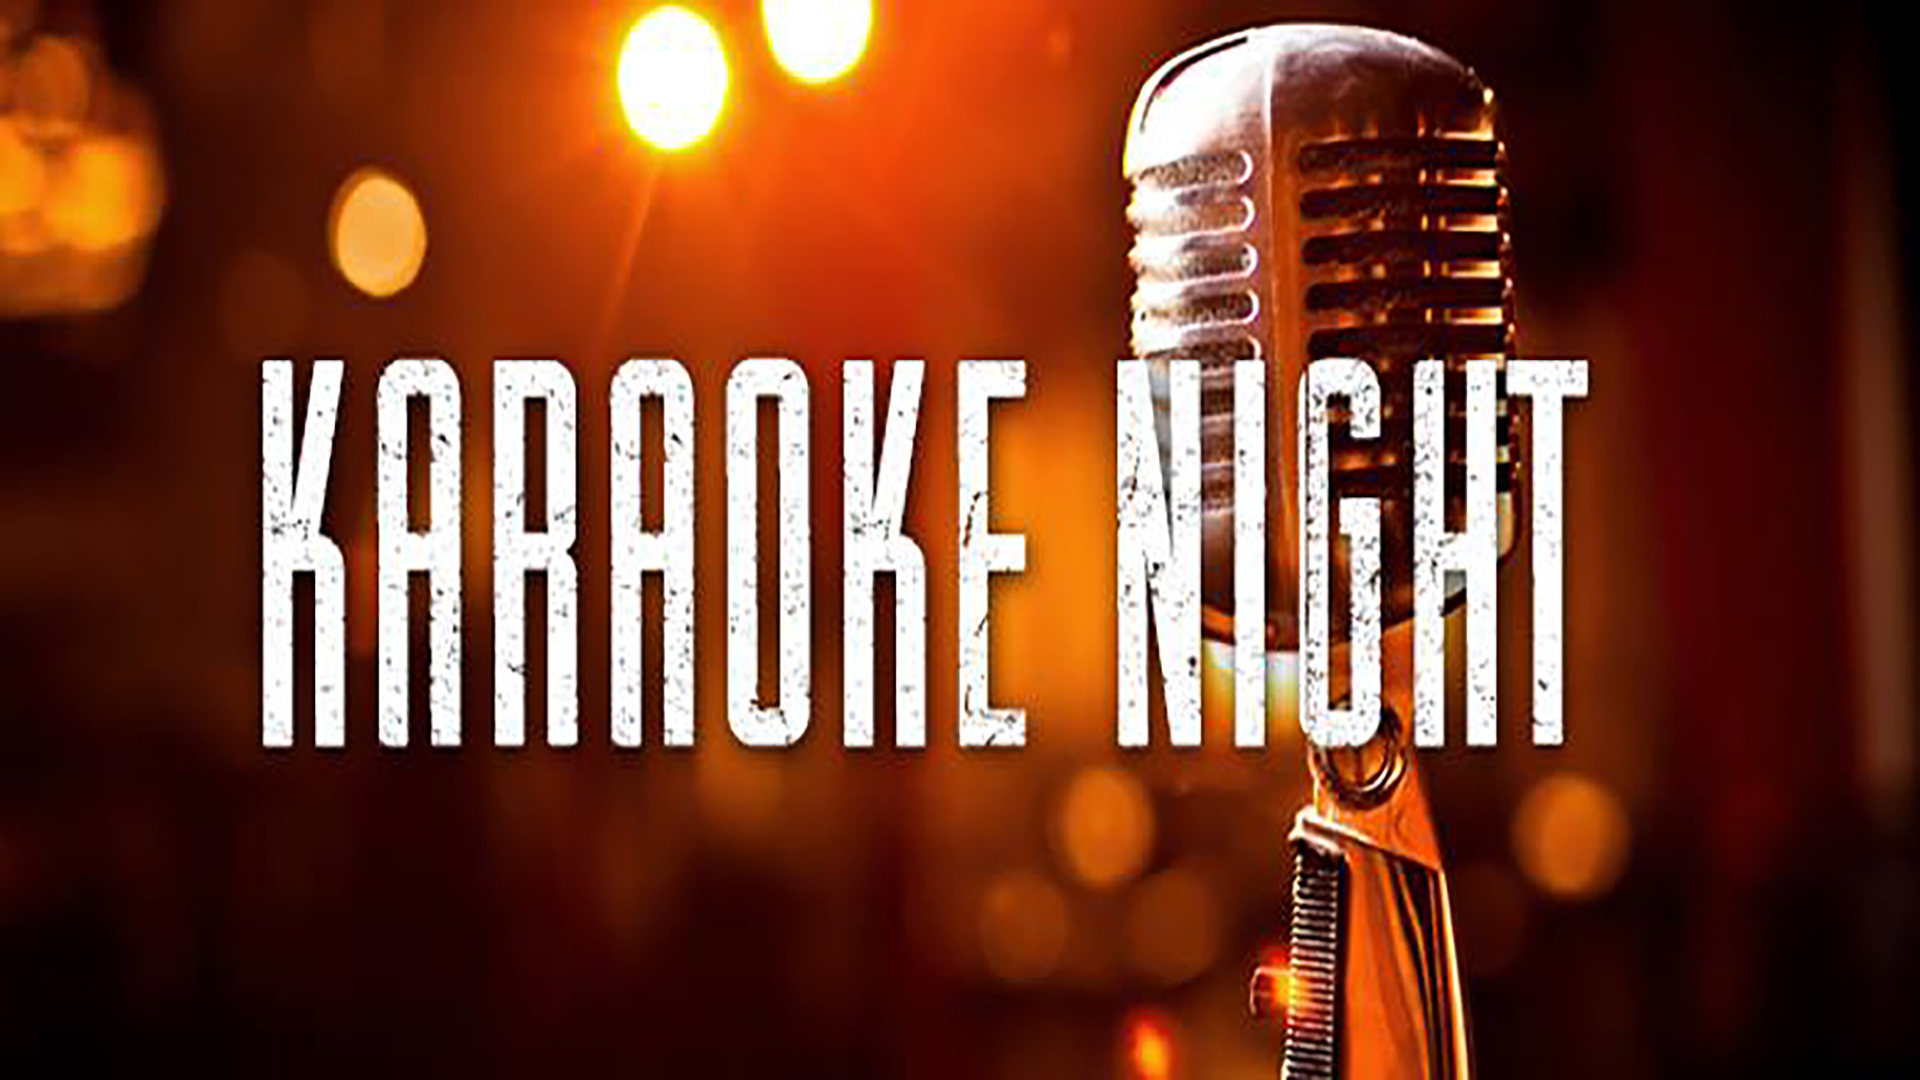 Karaoke Night , HD Wallpaper & Backgrounds